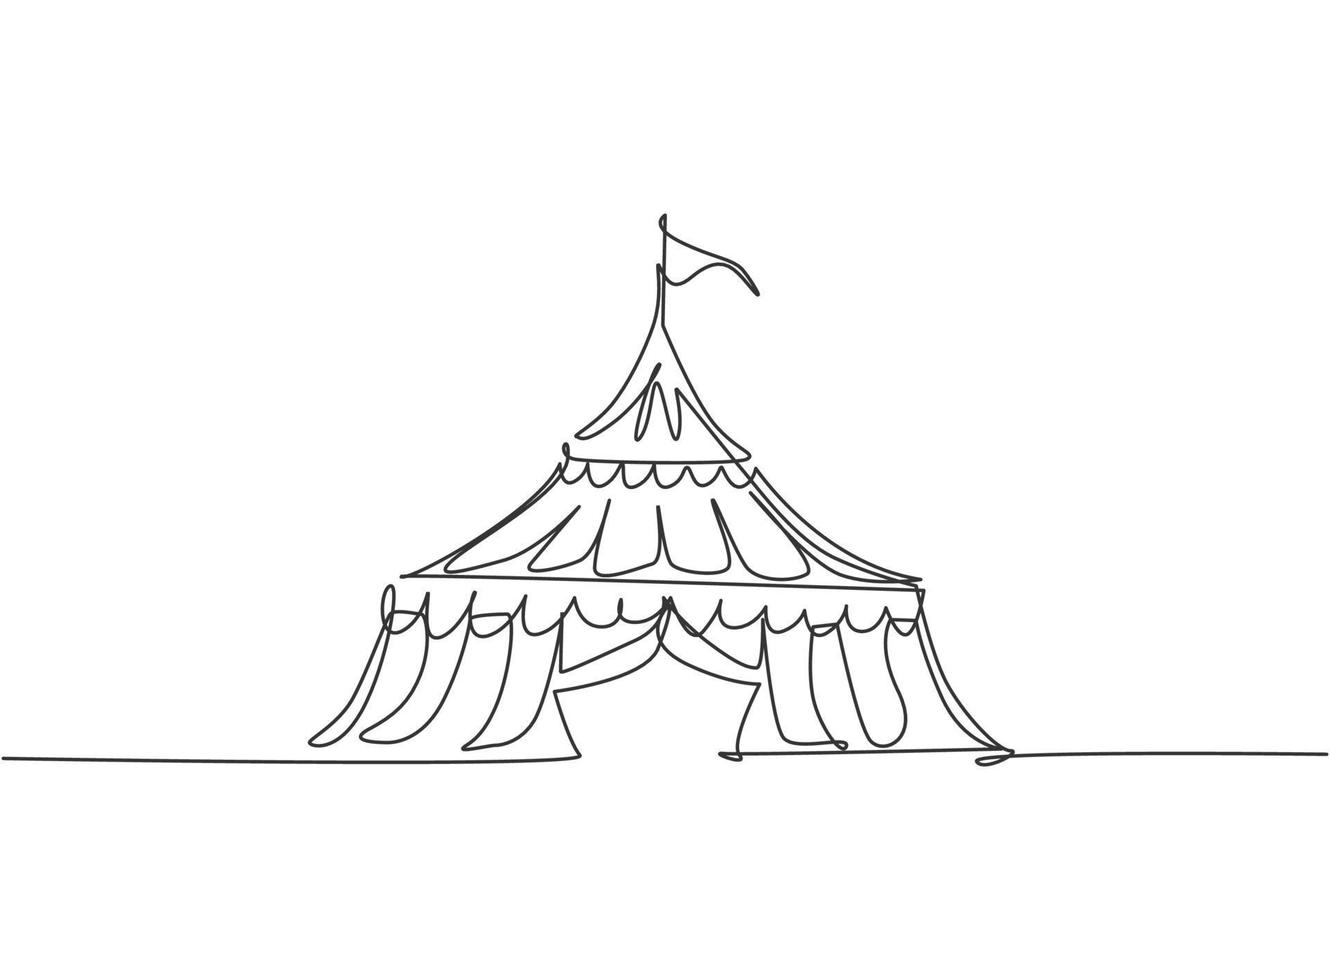 tenda da circo con disegno a linea continua a forma di triangolo con strisce e bandiera nella parte superiore. luogo di spettacolo per clown, maghi, animali. una linea disegnare grafica illustrazione vettoriale. vettore